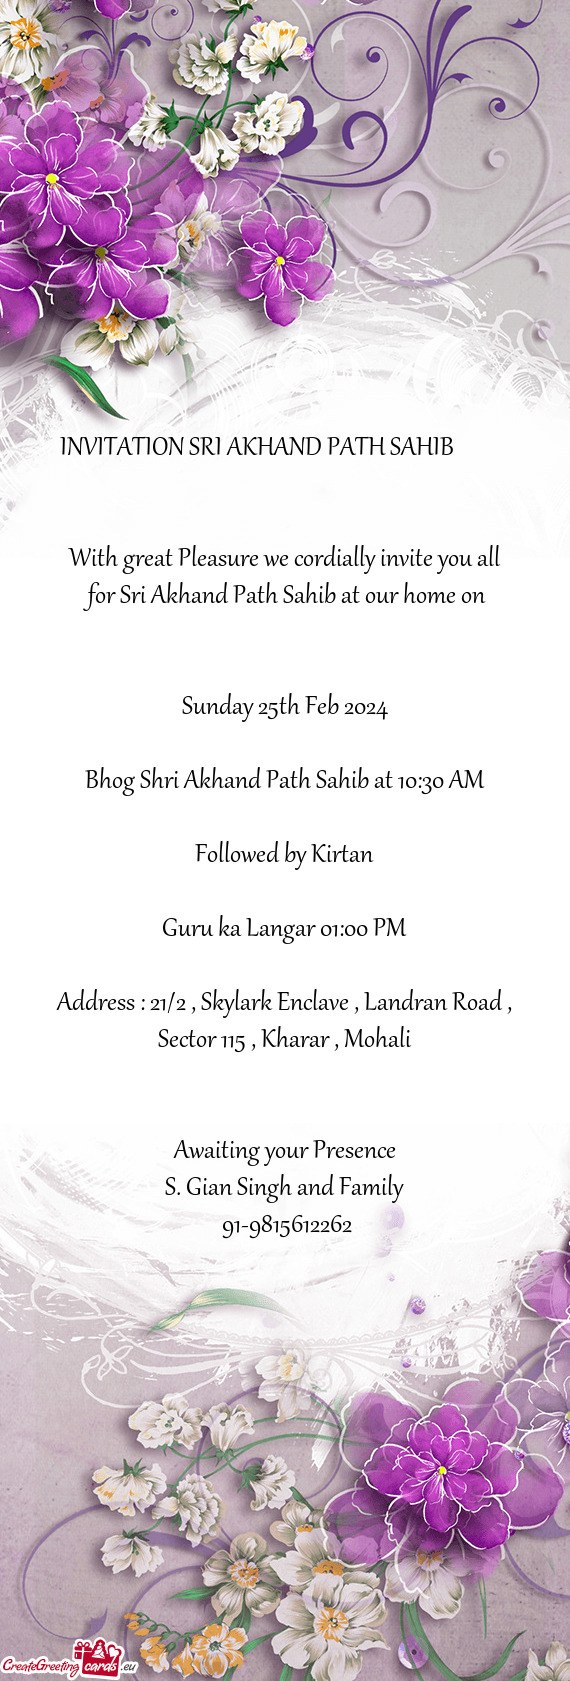 INVITATION SRI AKHAND PATH SAHIB